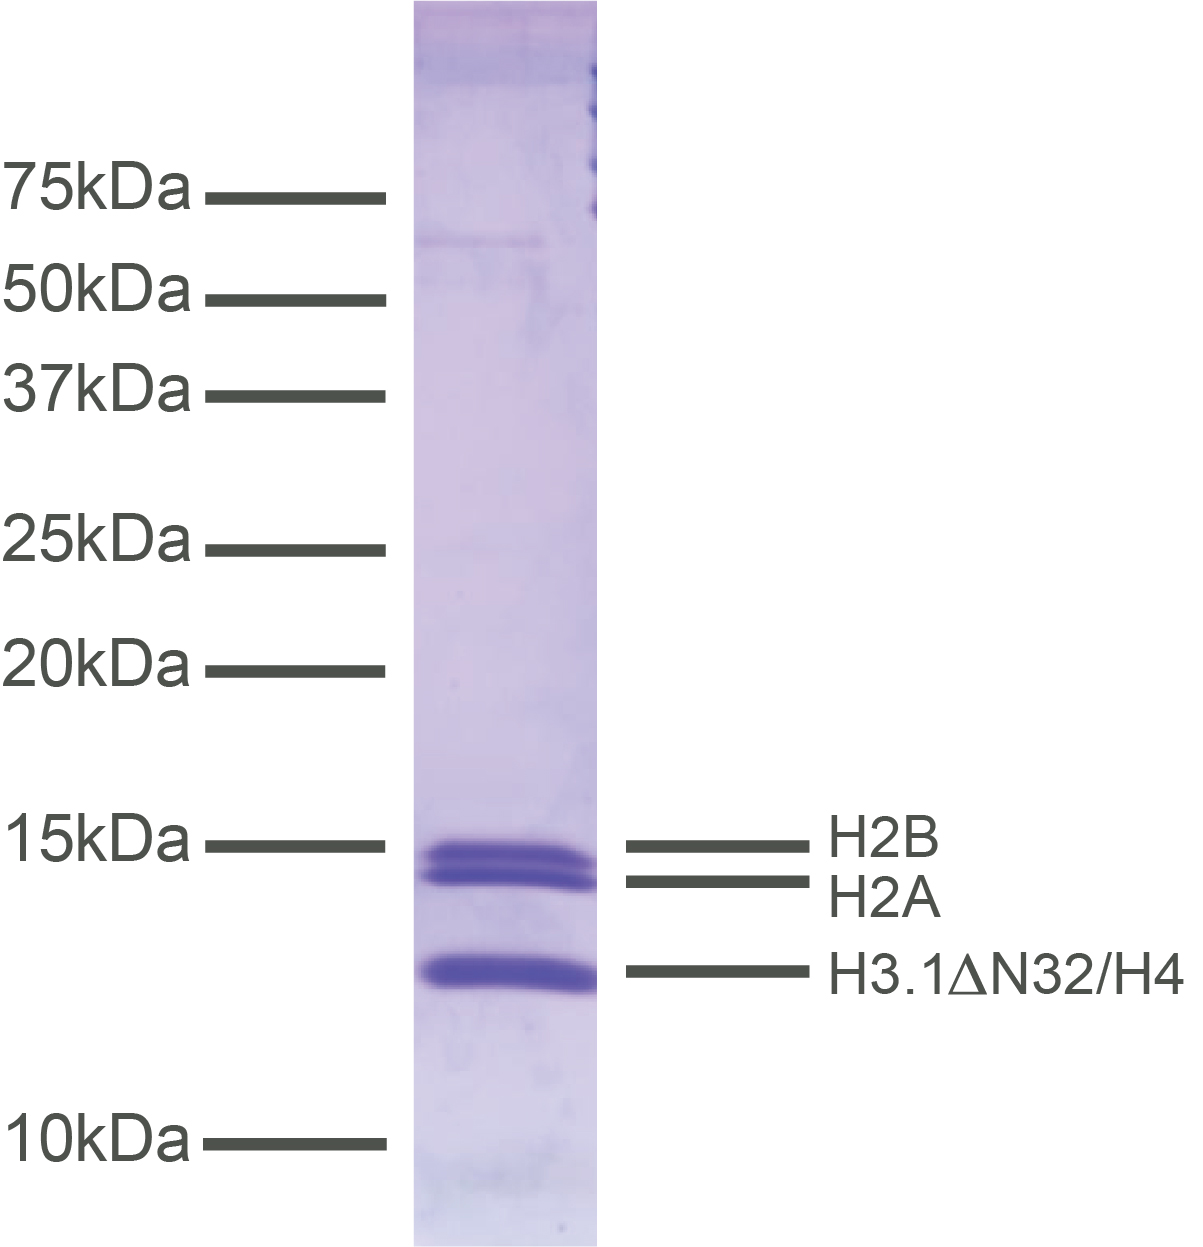 16-1016-protein-gel-data